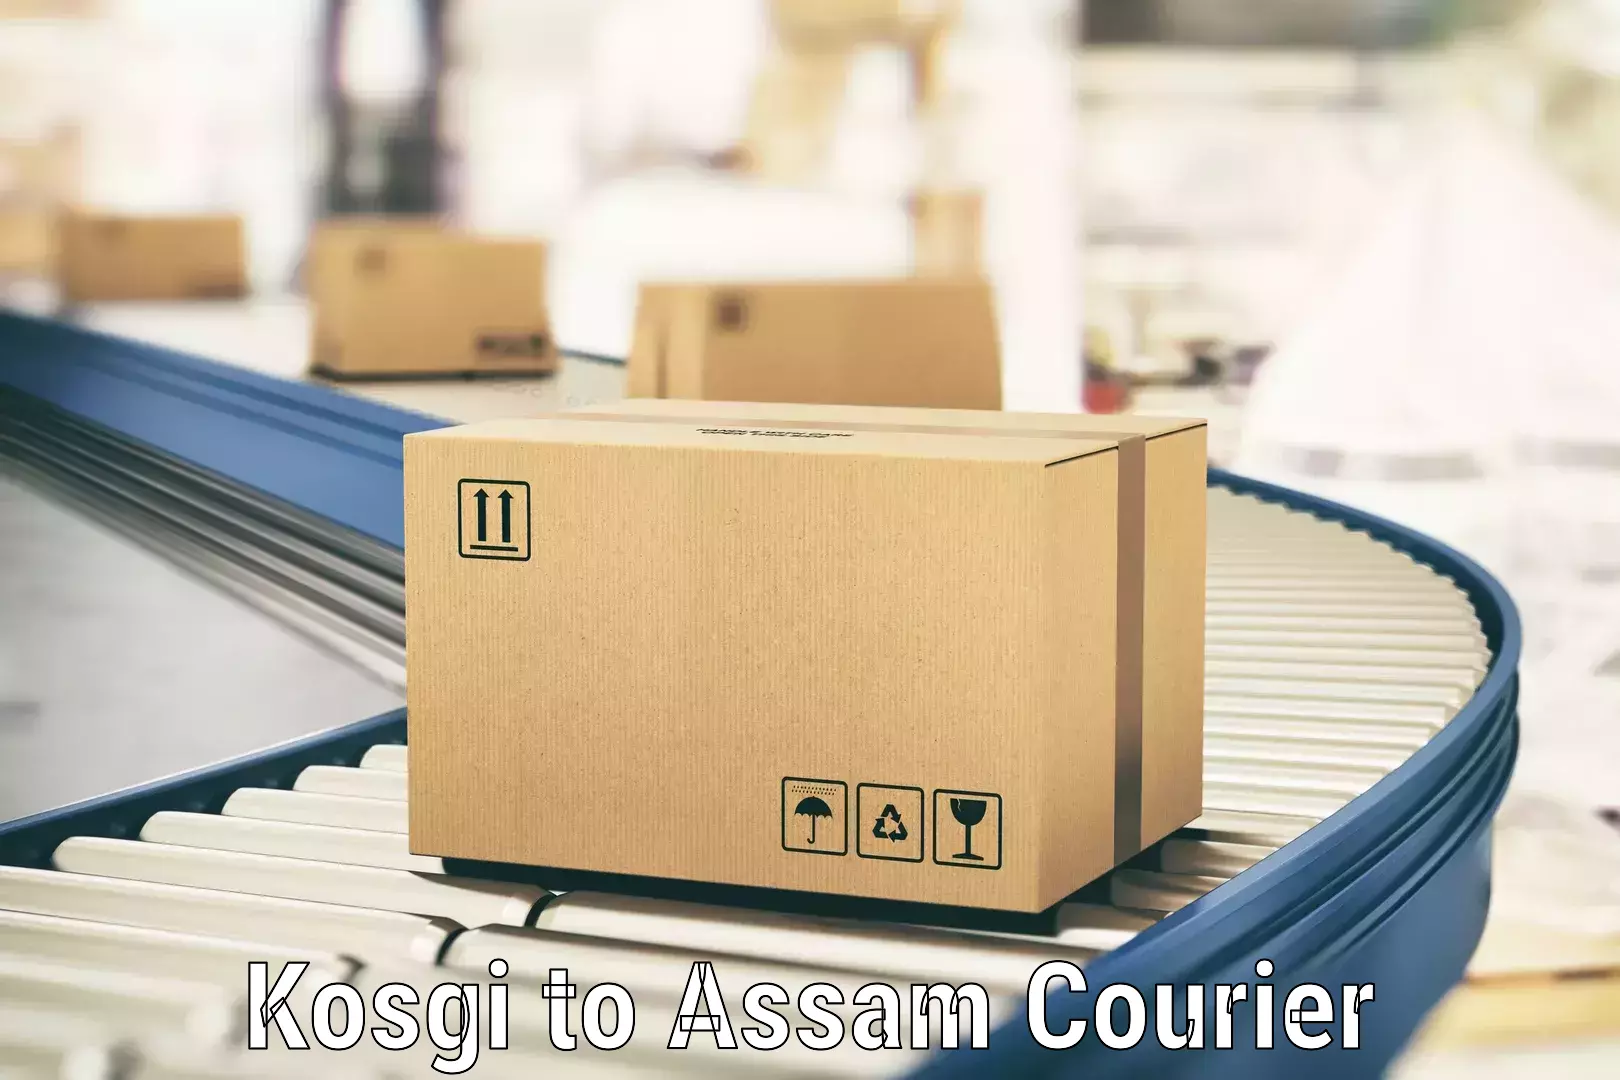 Efficient parcel delivery Kosgi to Nagaon